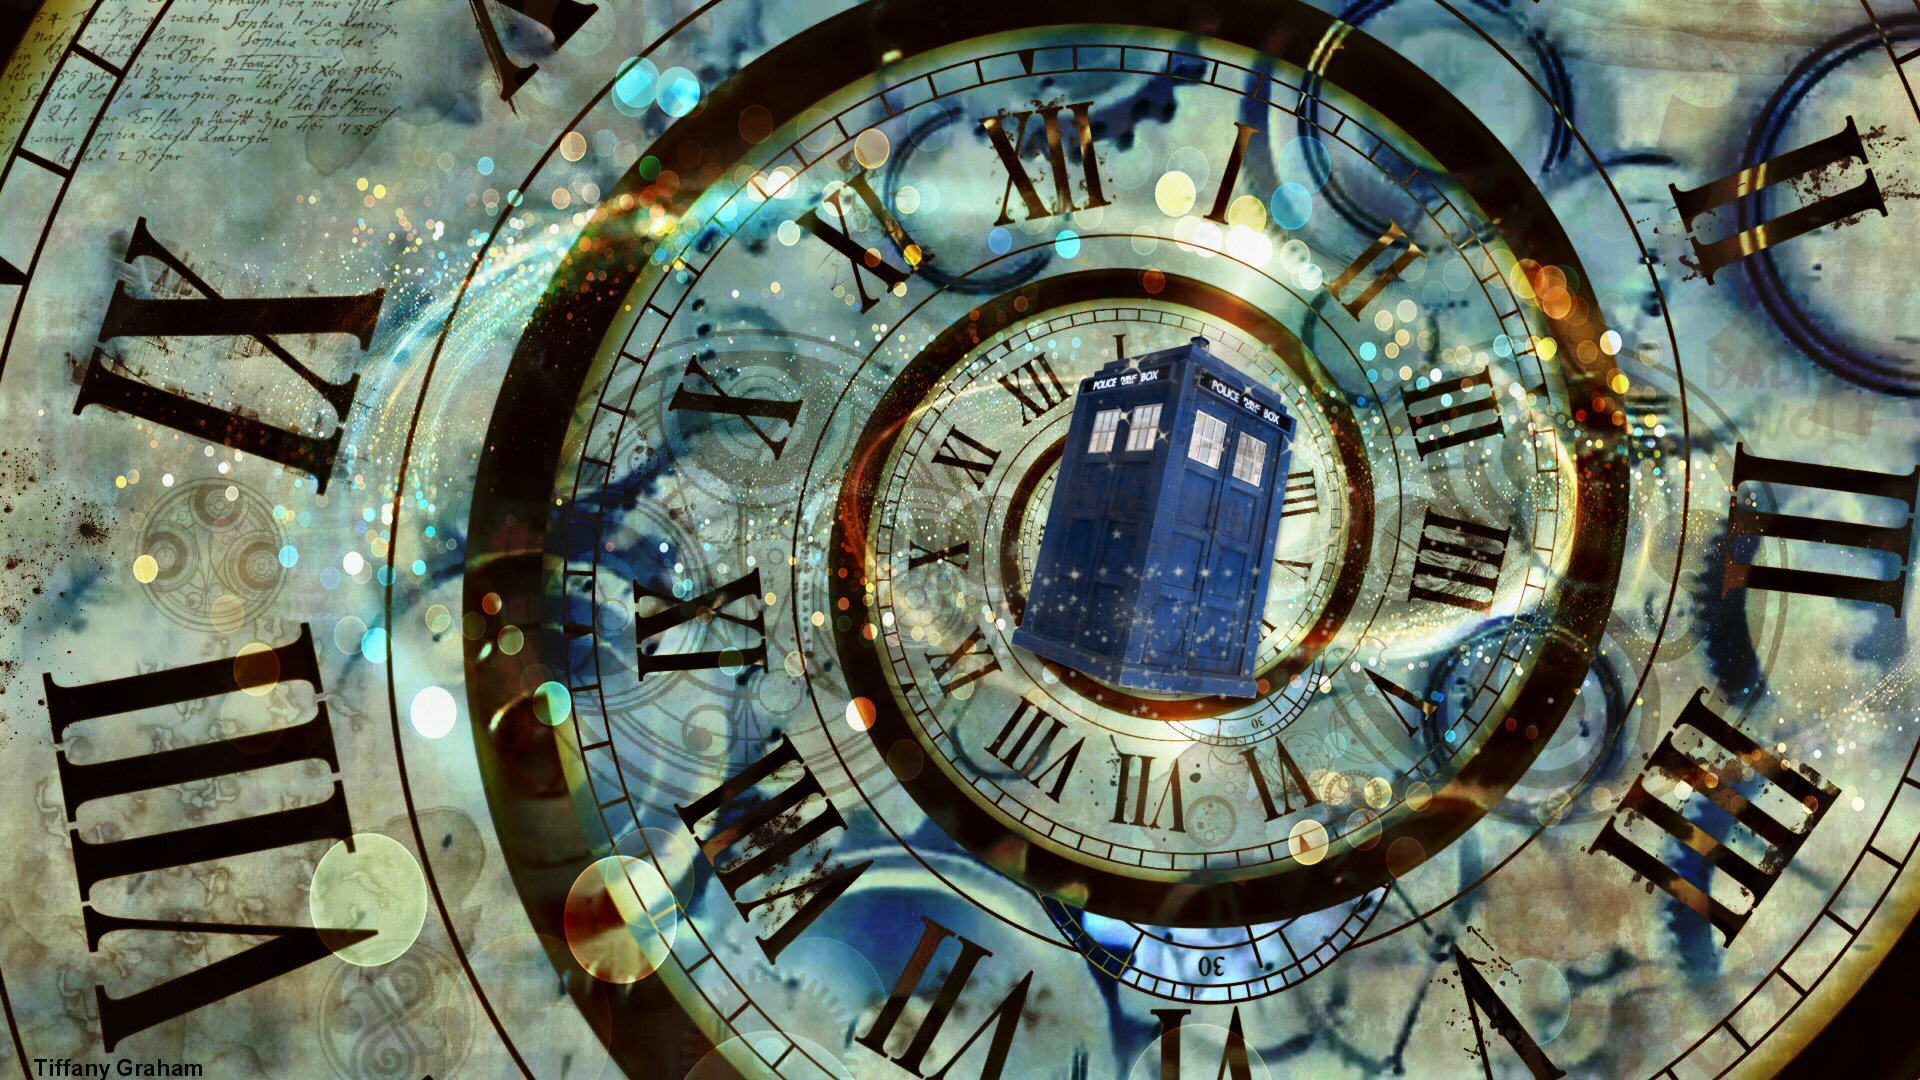 New Doctor Who Tardis Wallpaper Aberrant Rhetoric